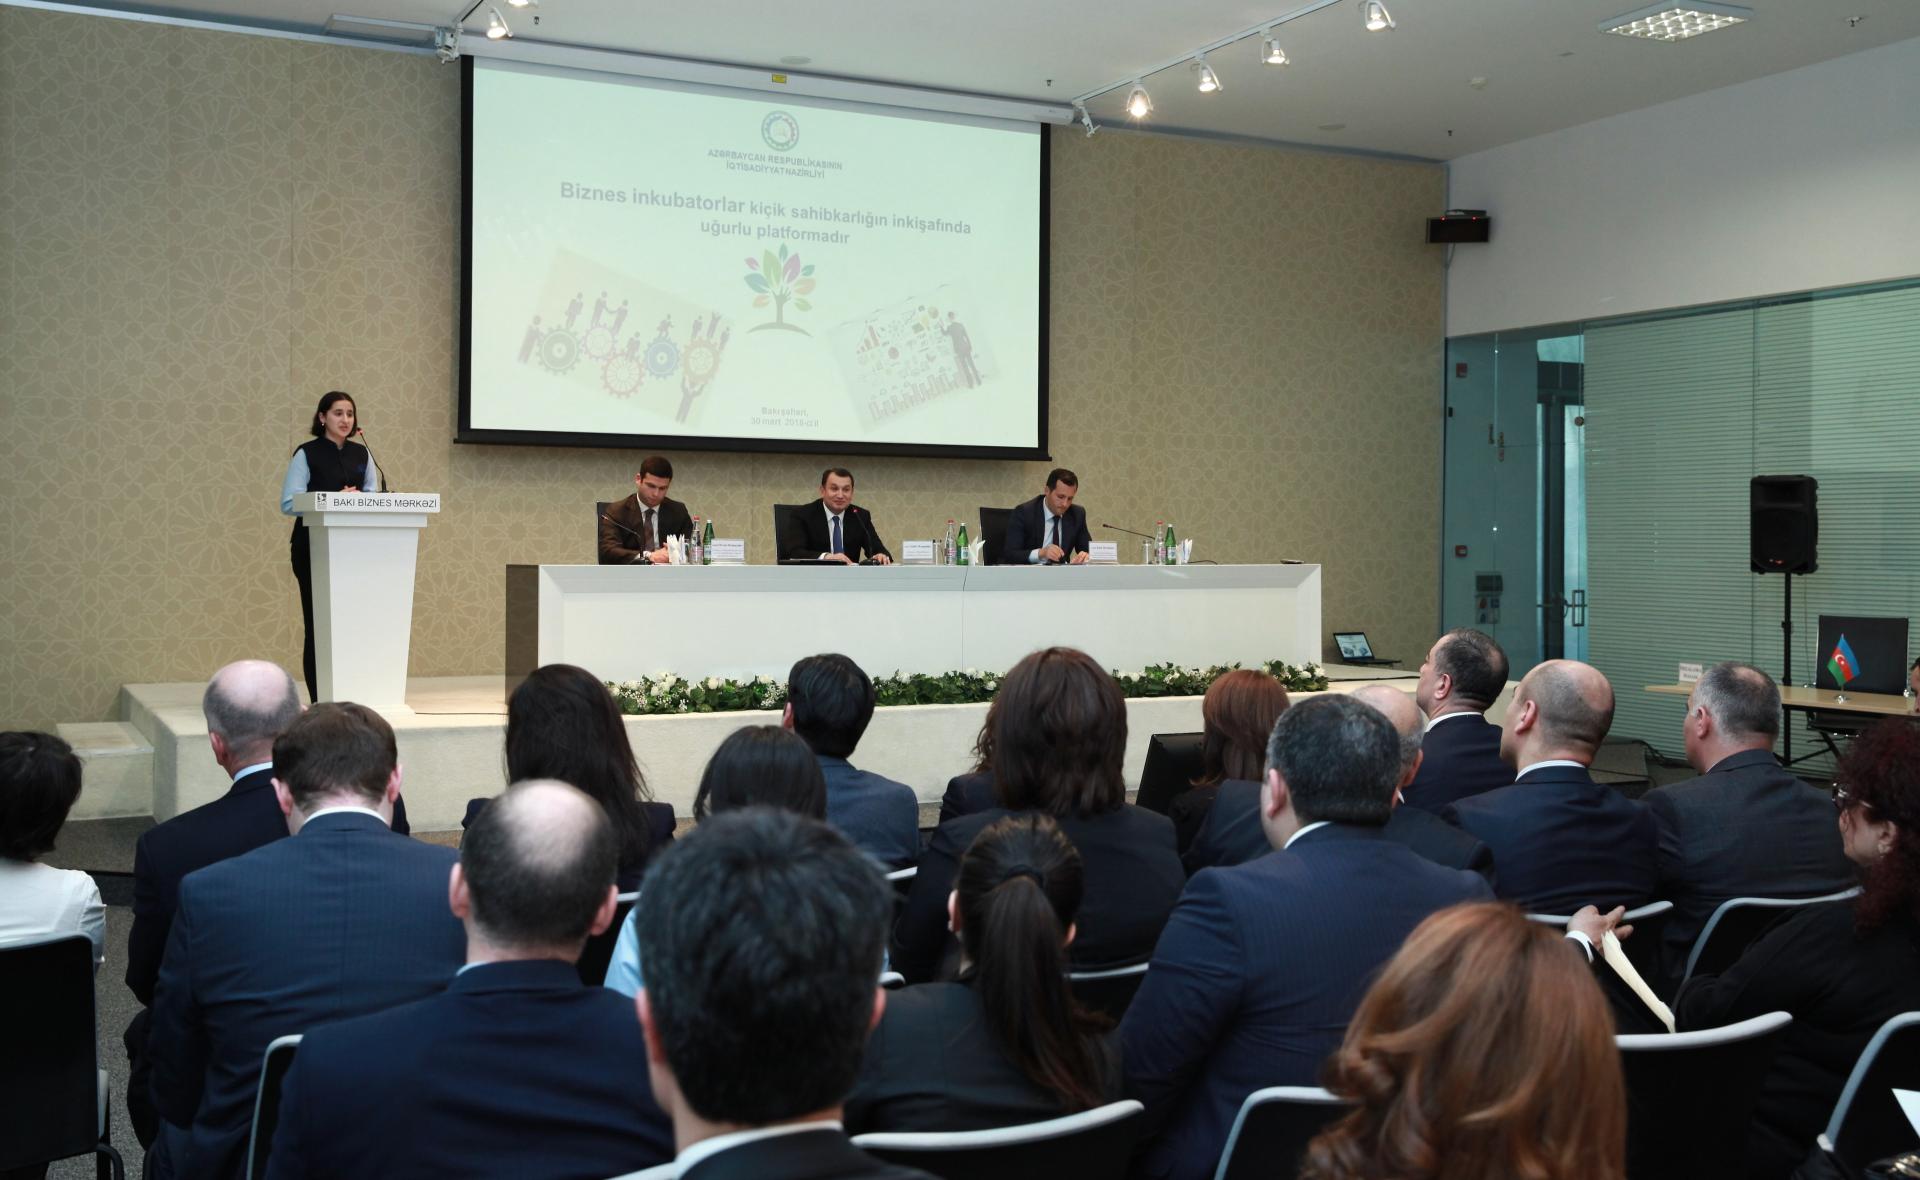 Орхан Мамедов: Наша задача - превратить МСП в основную движущую силу экономики Азербайджана  (ФОТО)